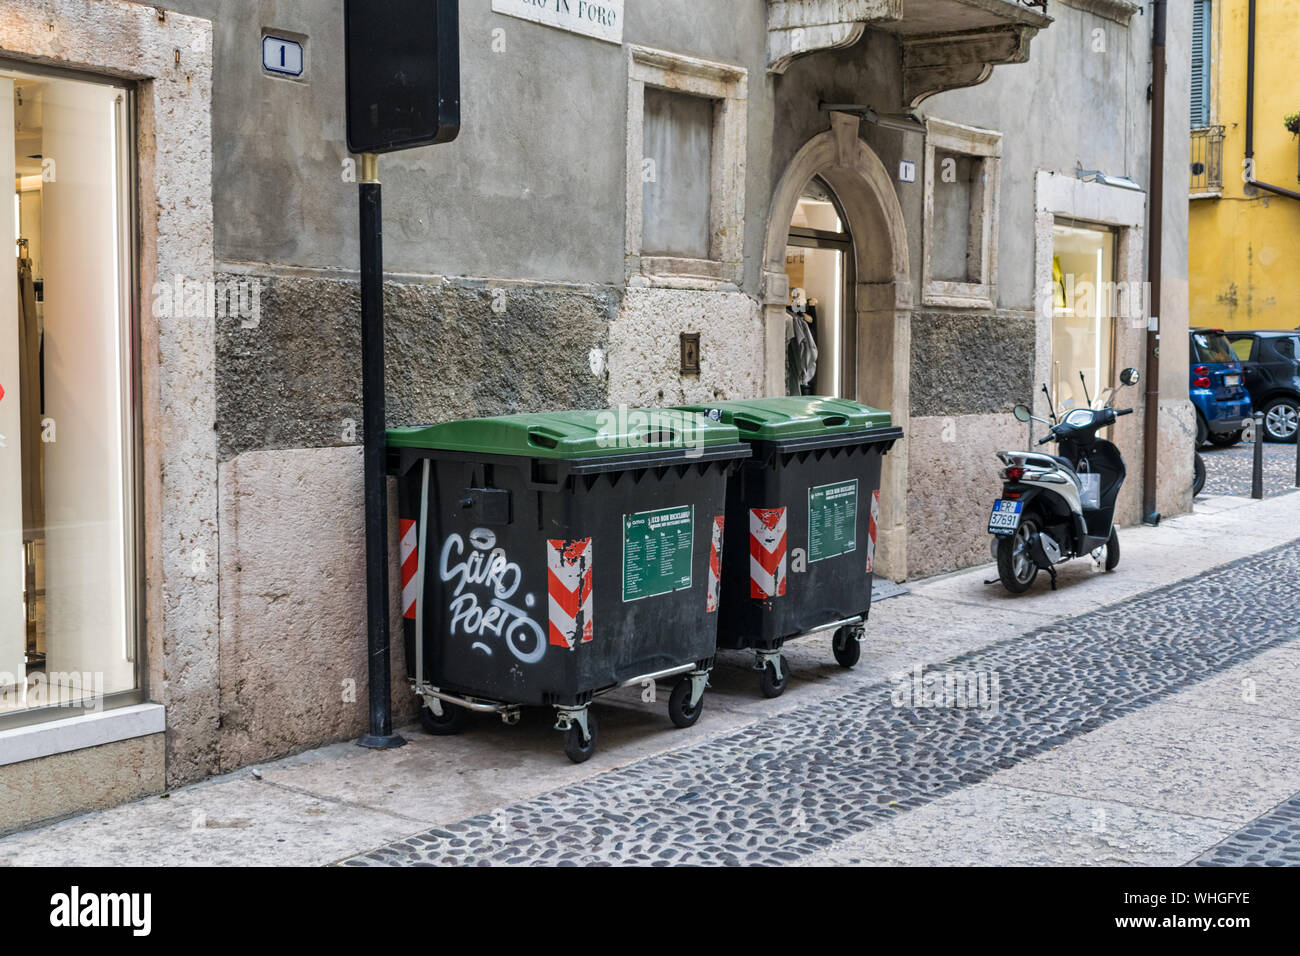 Verona (Italia) - Julio 27, 2019: TCity papeleras en el lado de la calle en Verona, Italia Foto de stock